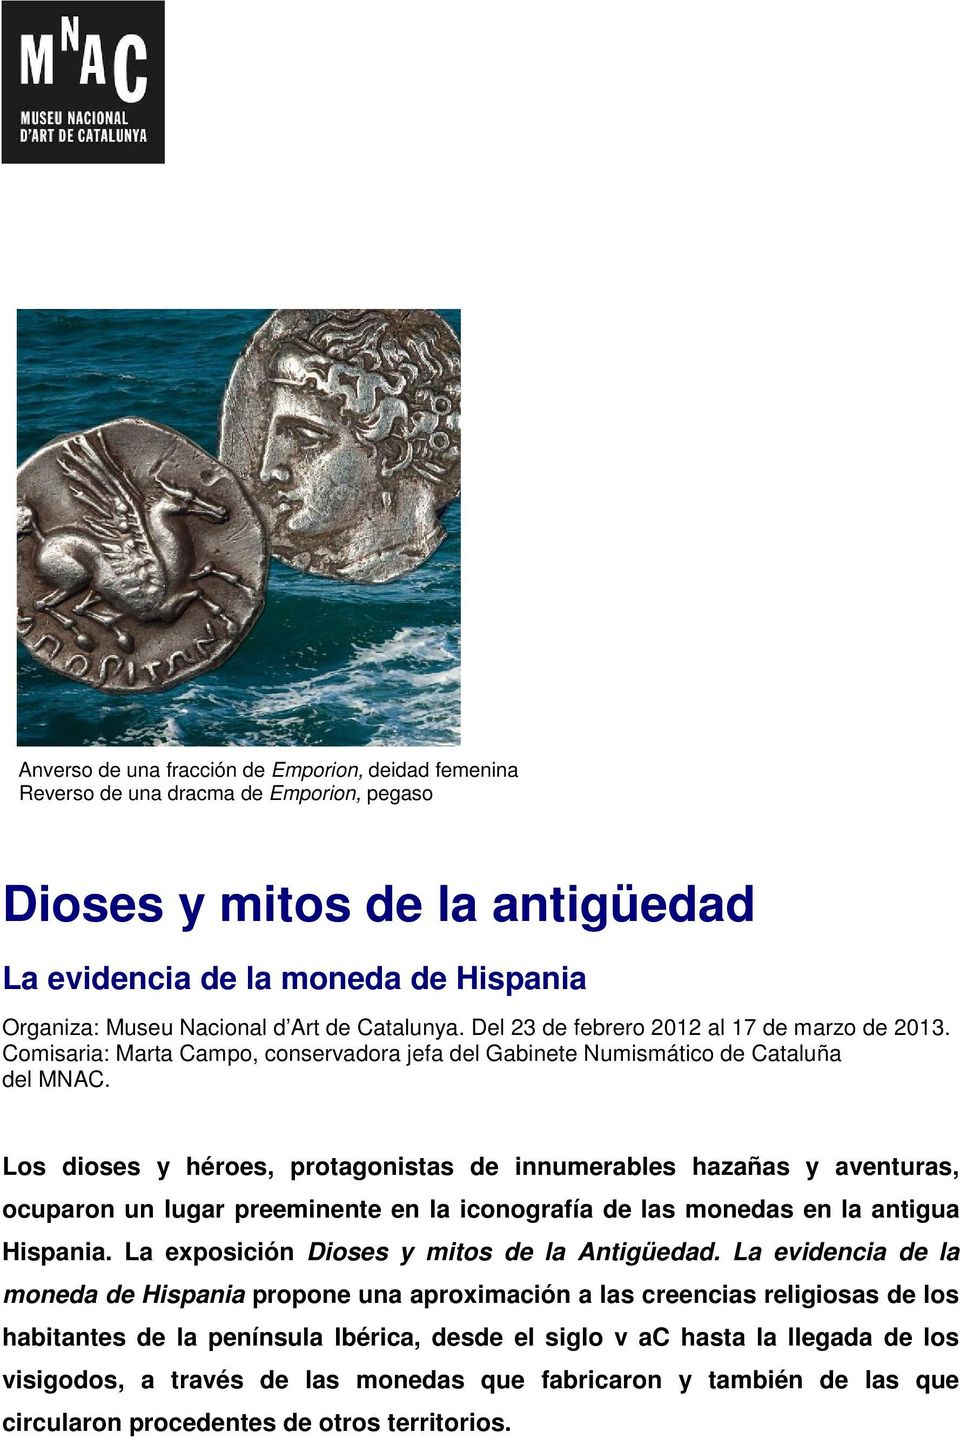 Los dioses y héroes, protagonistas de innumerables hazañas y aventuras, ocuparon un lugar preeminente en la iconografía de las monedas en la antigua Hispania.